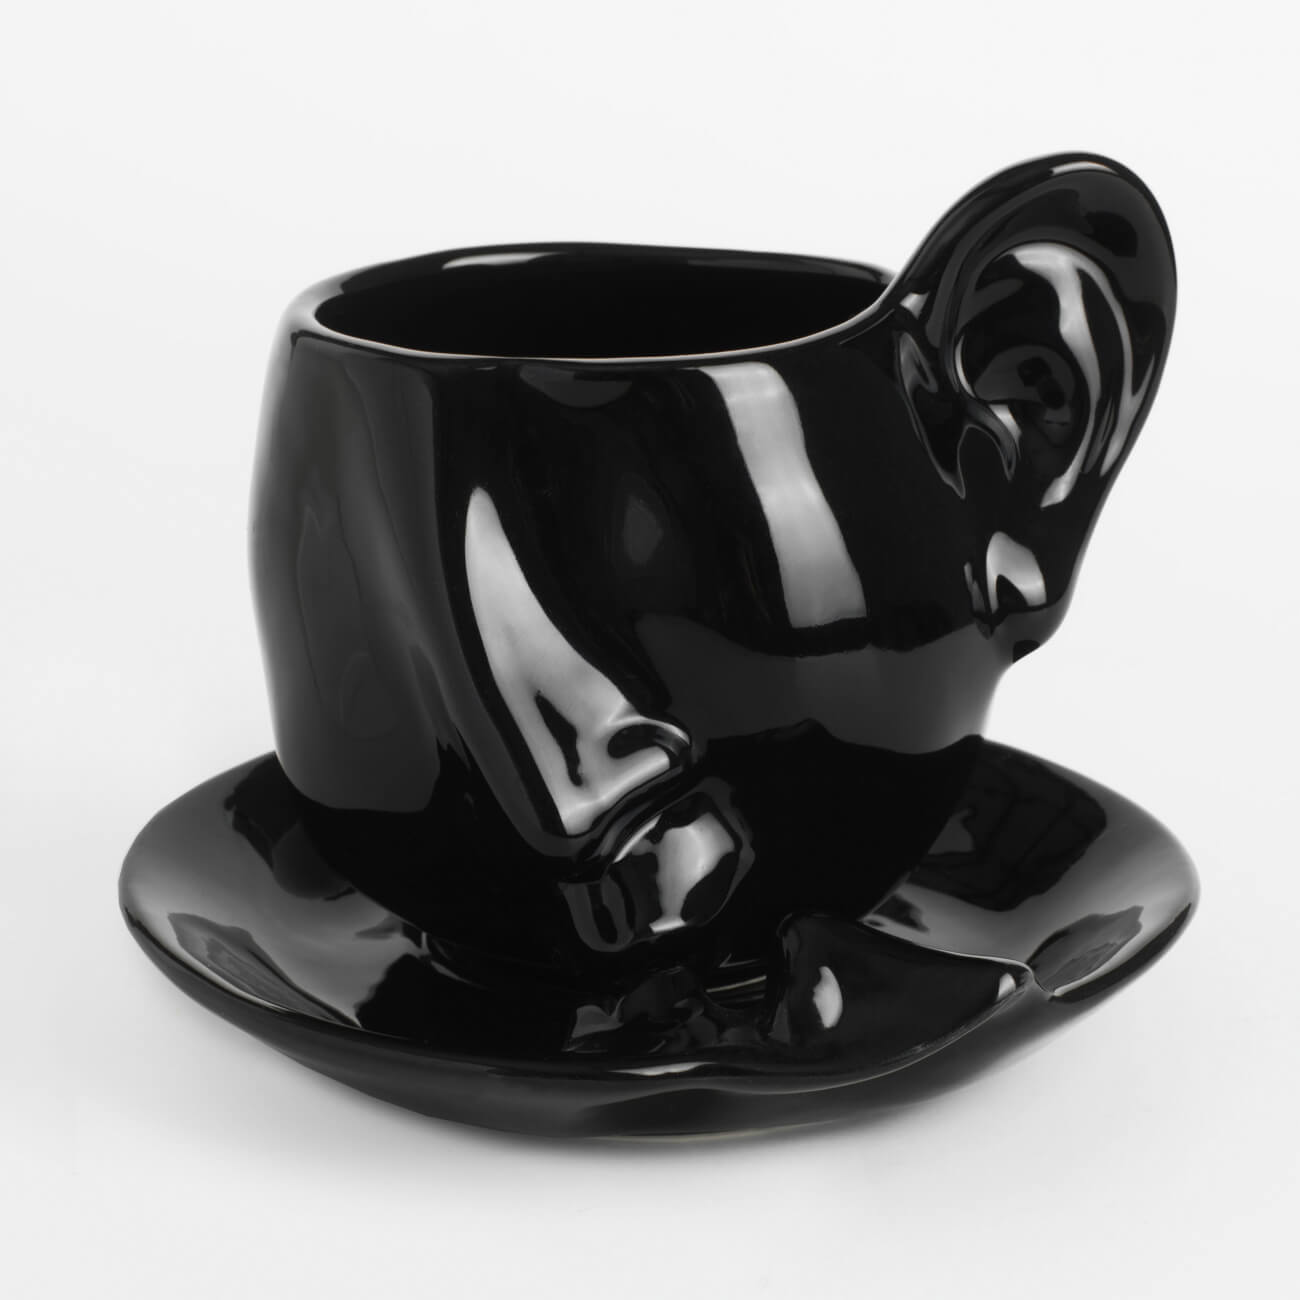 Пара чайная, 1 перс, 2 пр, 320 мл, керамика, черная, Поцелуй, Baise ложка чайная можжевельник 16 см микс